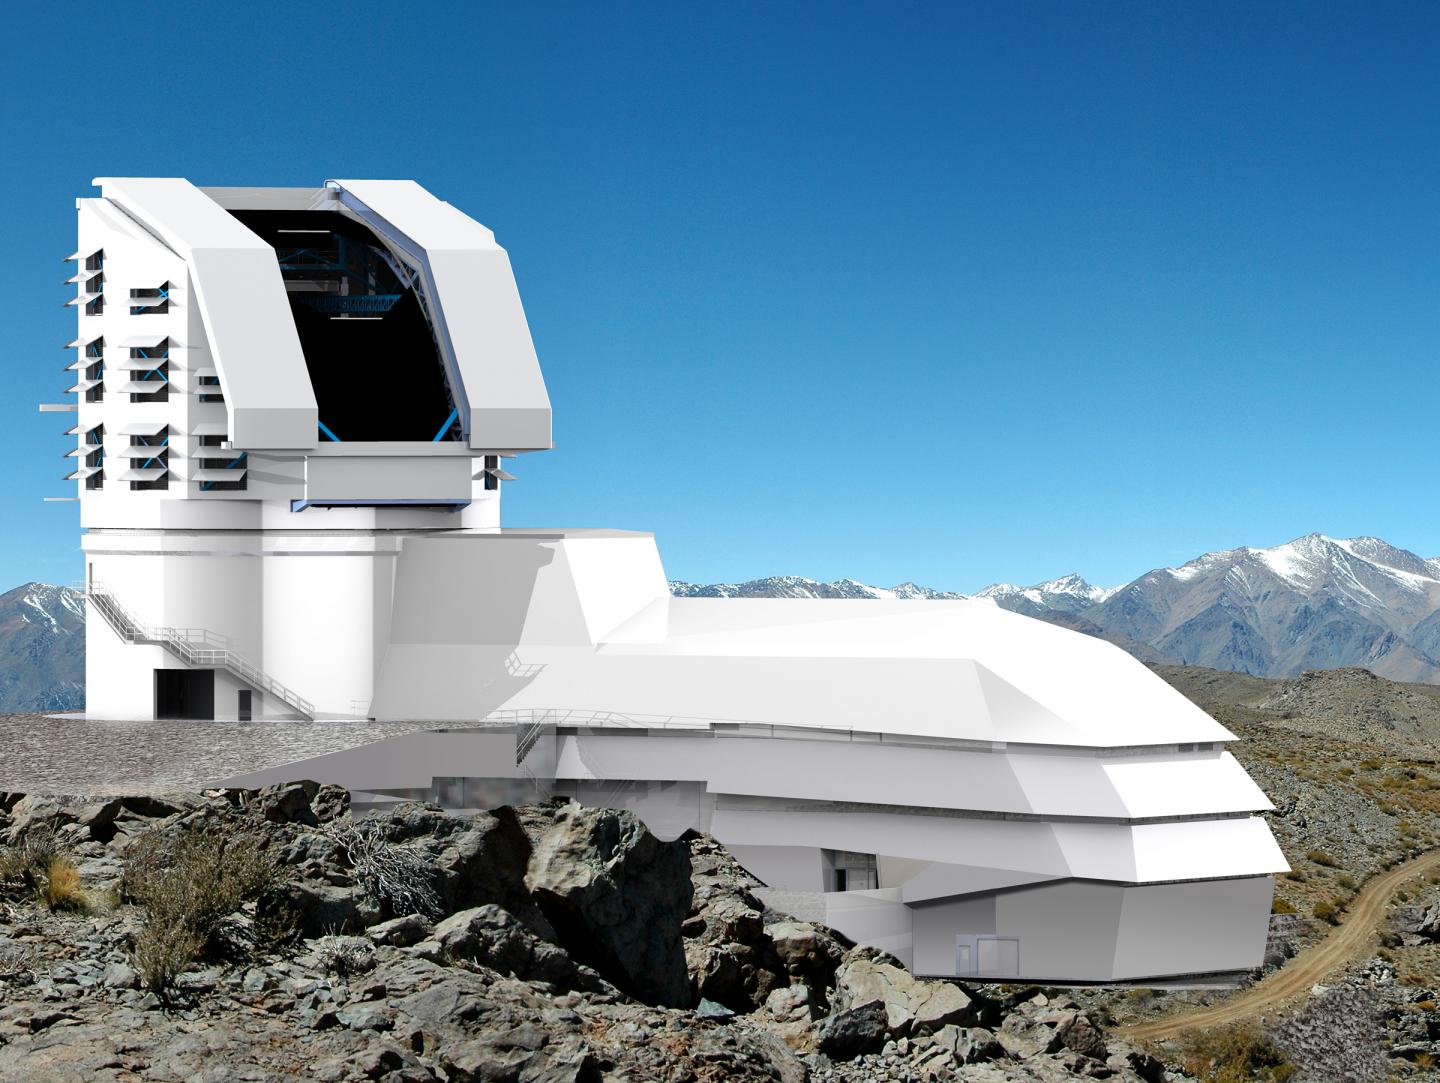 The Large Synoptic Survey Telescope